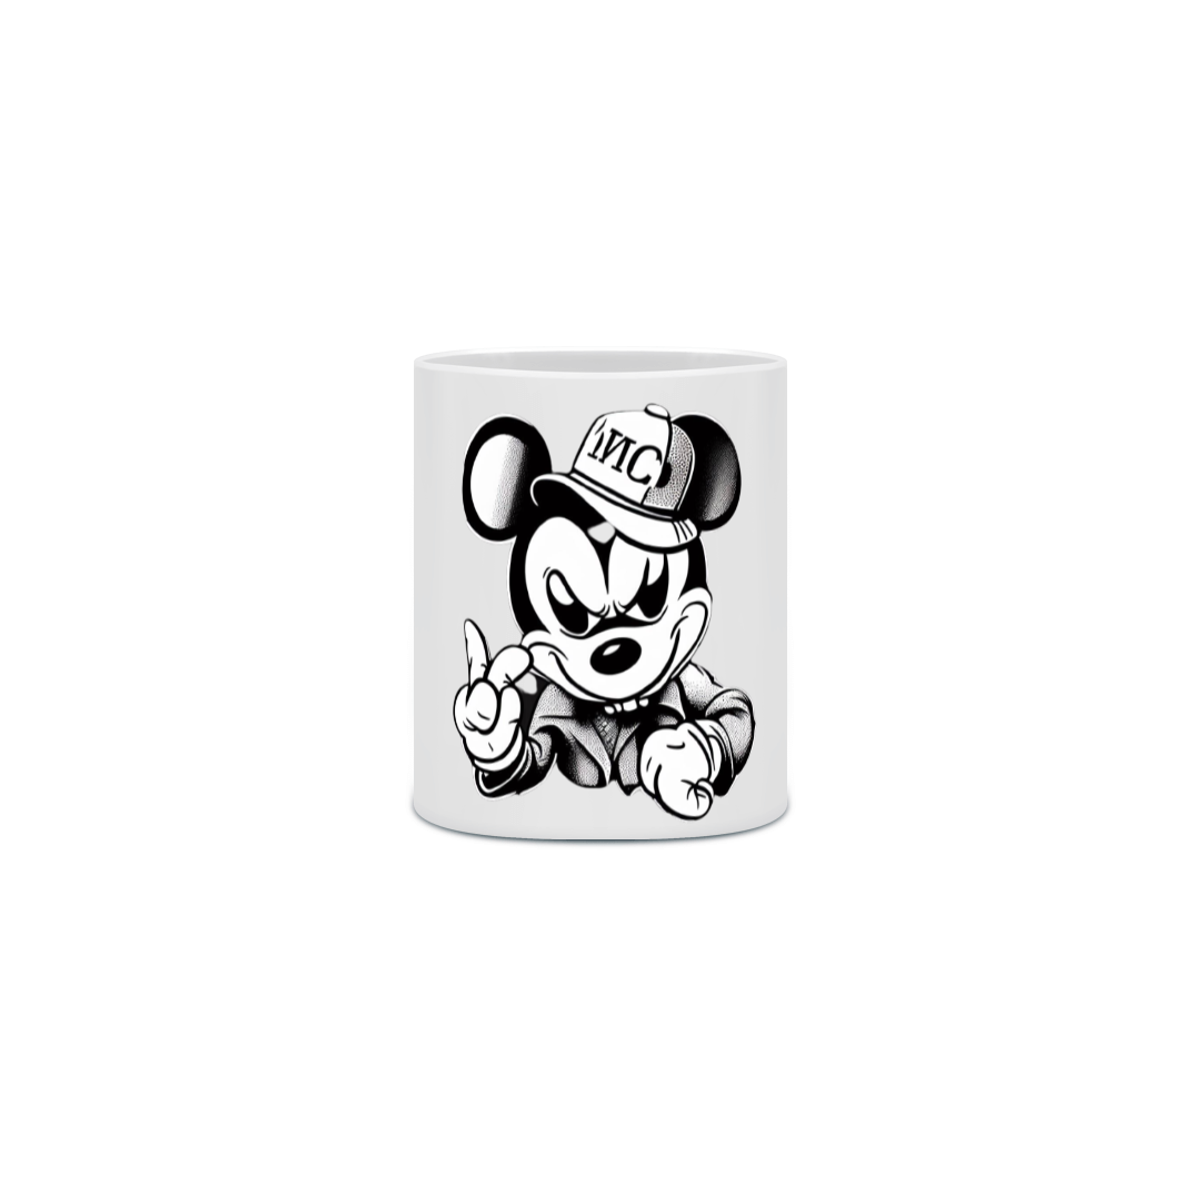 Nome do produto: Caneca Mickey